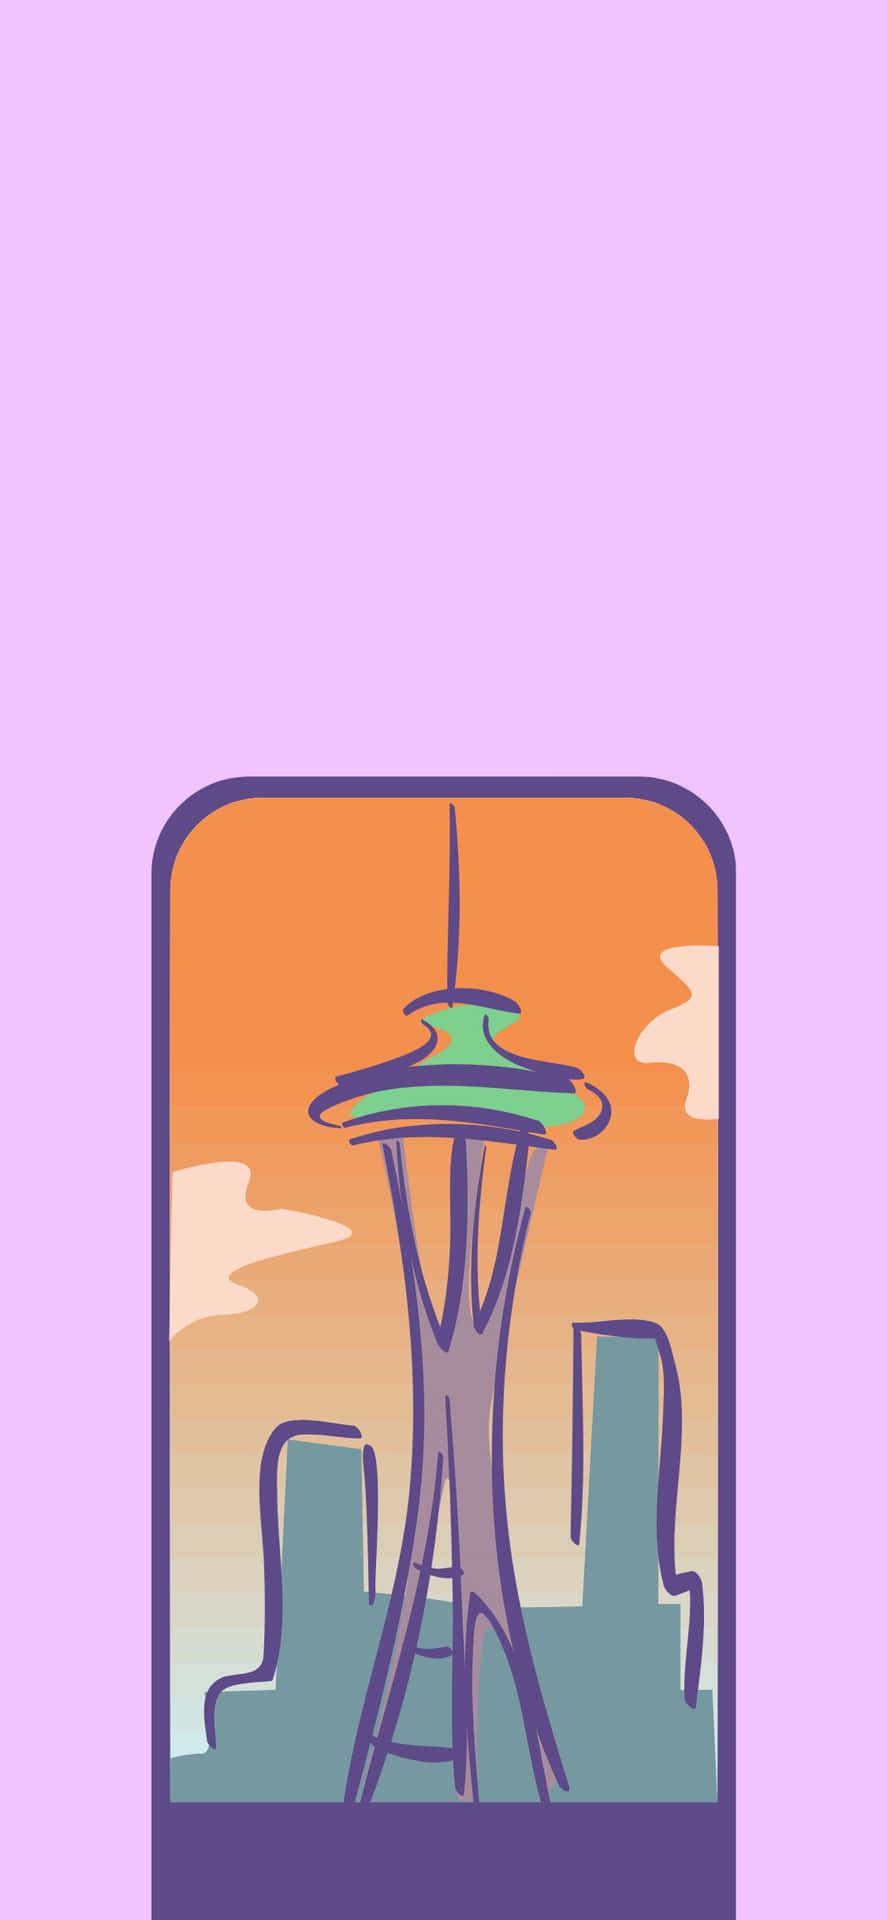 Genießensie Die Wunderschöne Landschaft Von Seattle Auf Einem Iphone X.